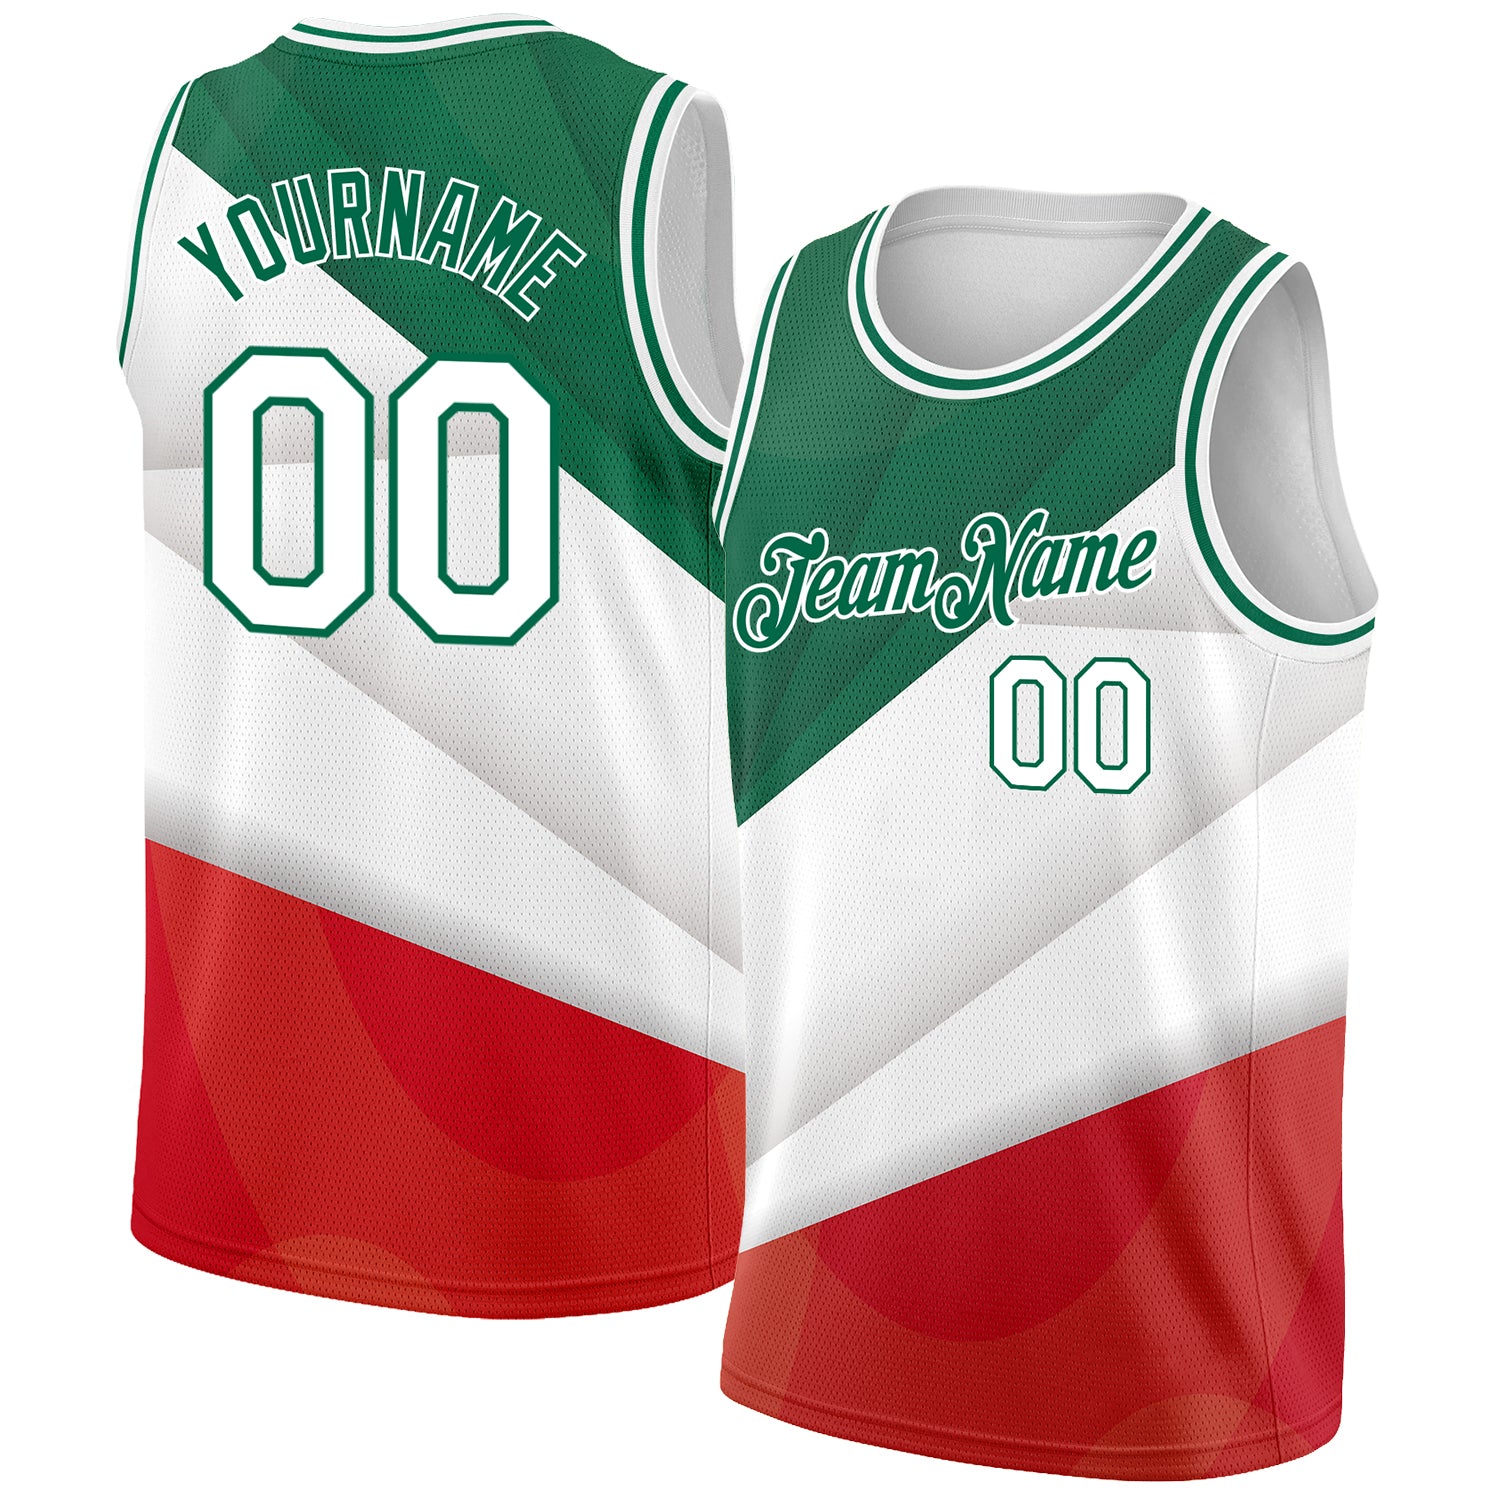 Basketball 3D Uniforms  Basketball uniforms, Basketball uniforms